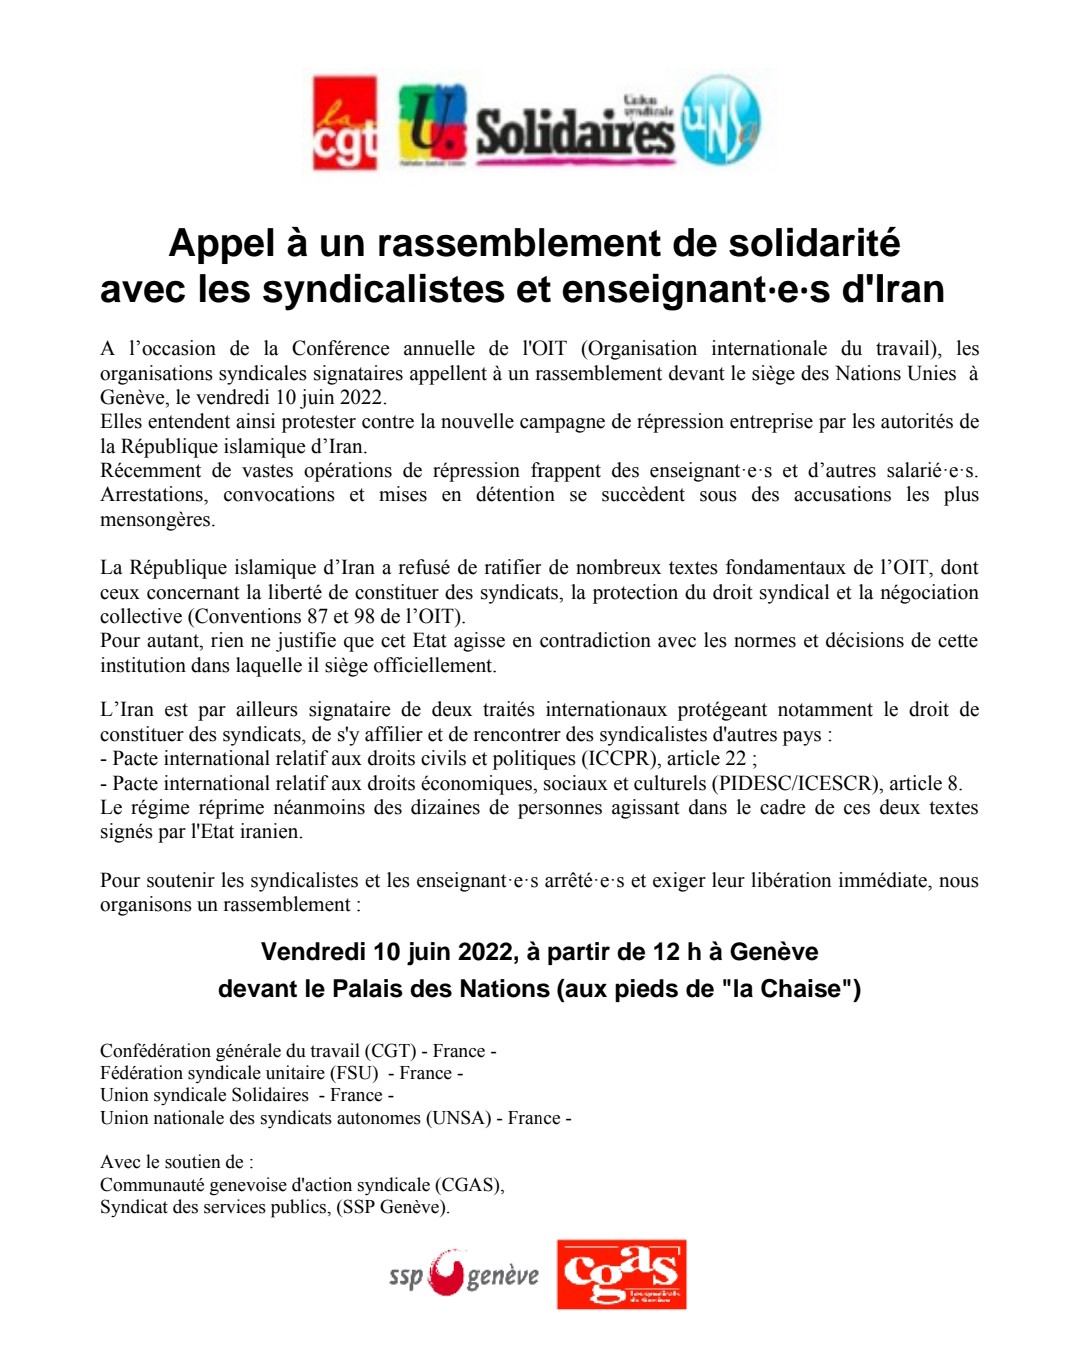 فراخوان چهار سندیکای فرانسه و حمایت دو سندیکای سو ئیسی برای همبستگی با سندیکالیست ها و معلمان در ایران